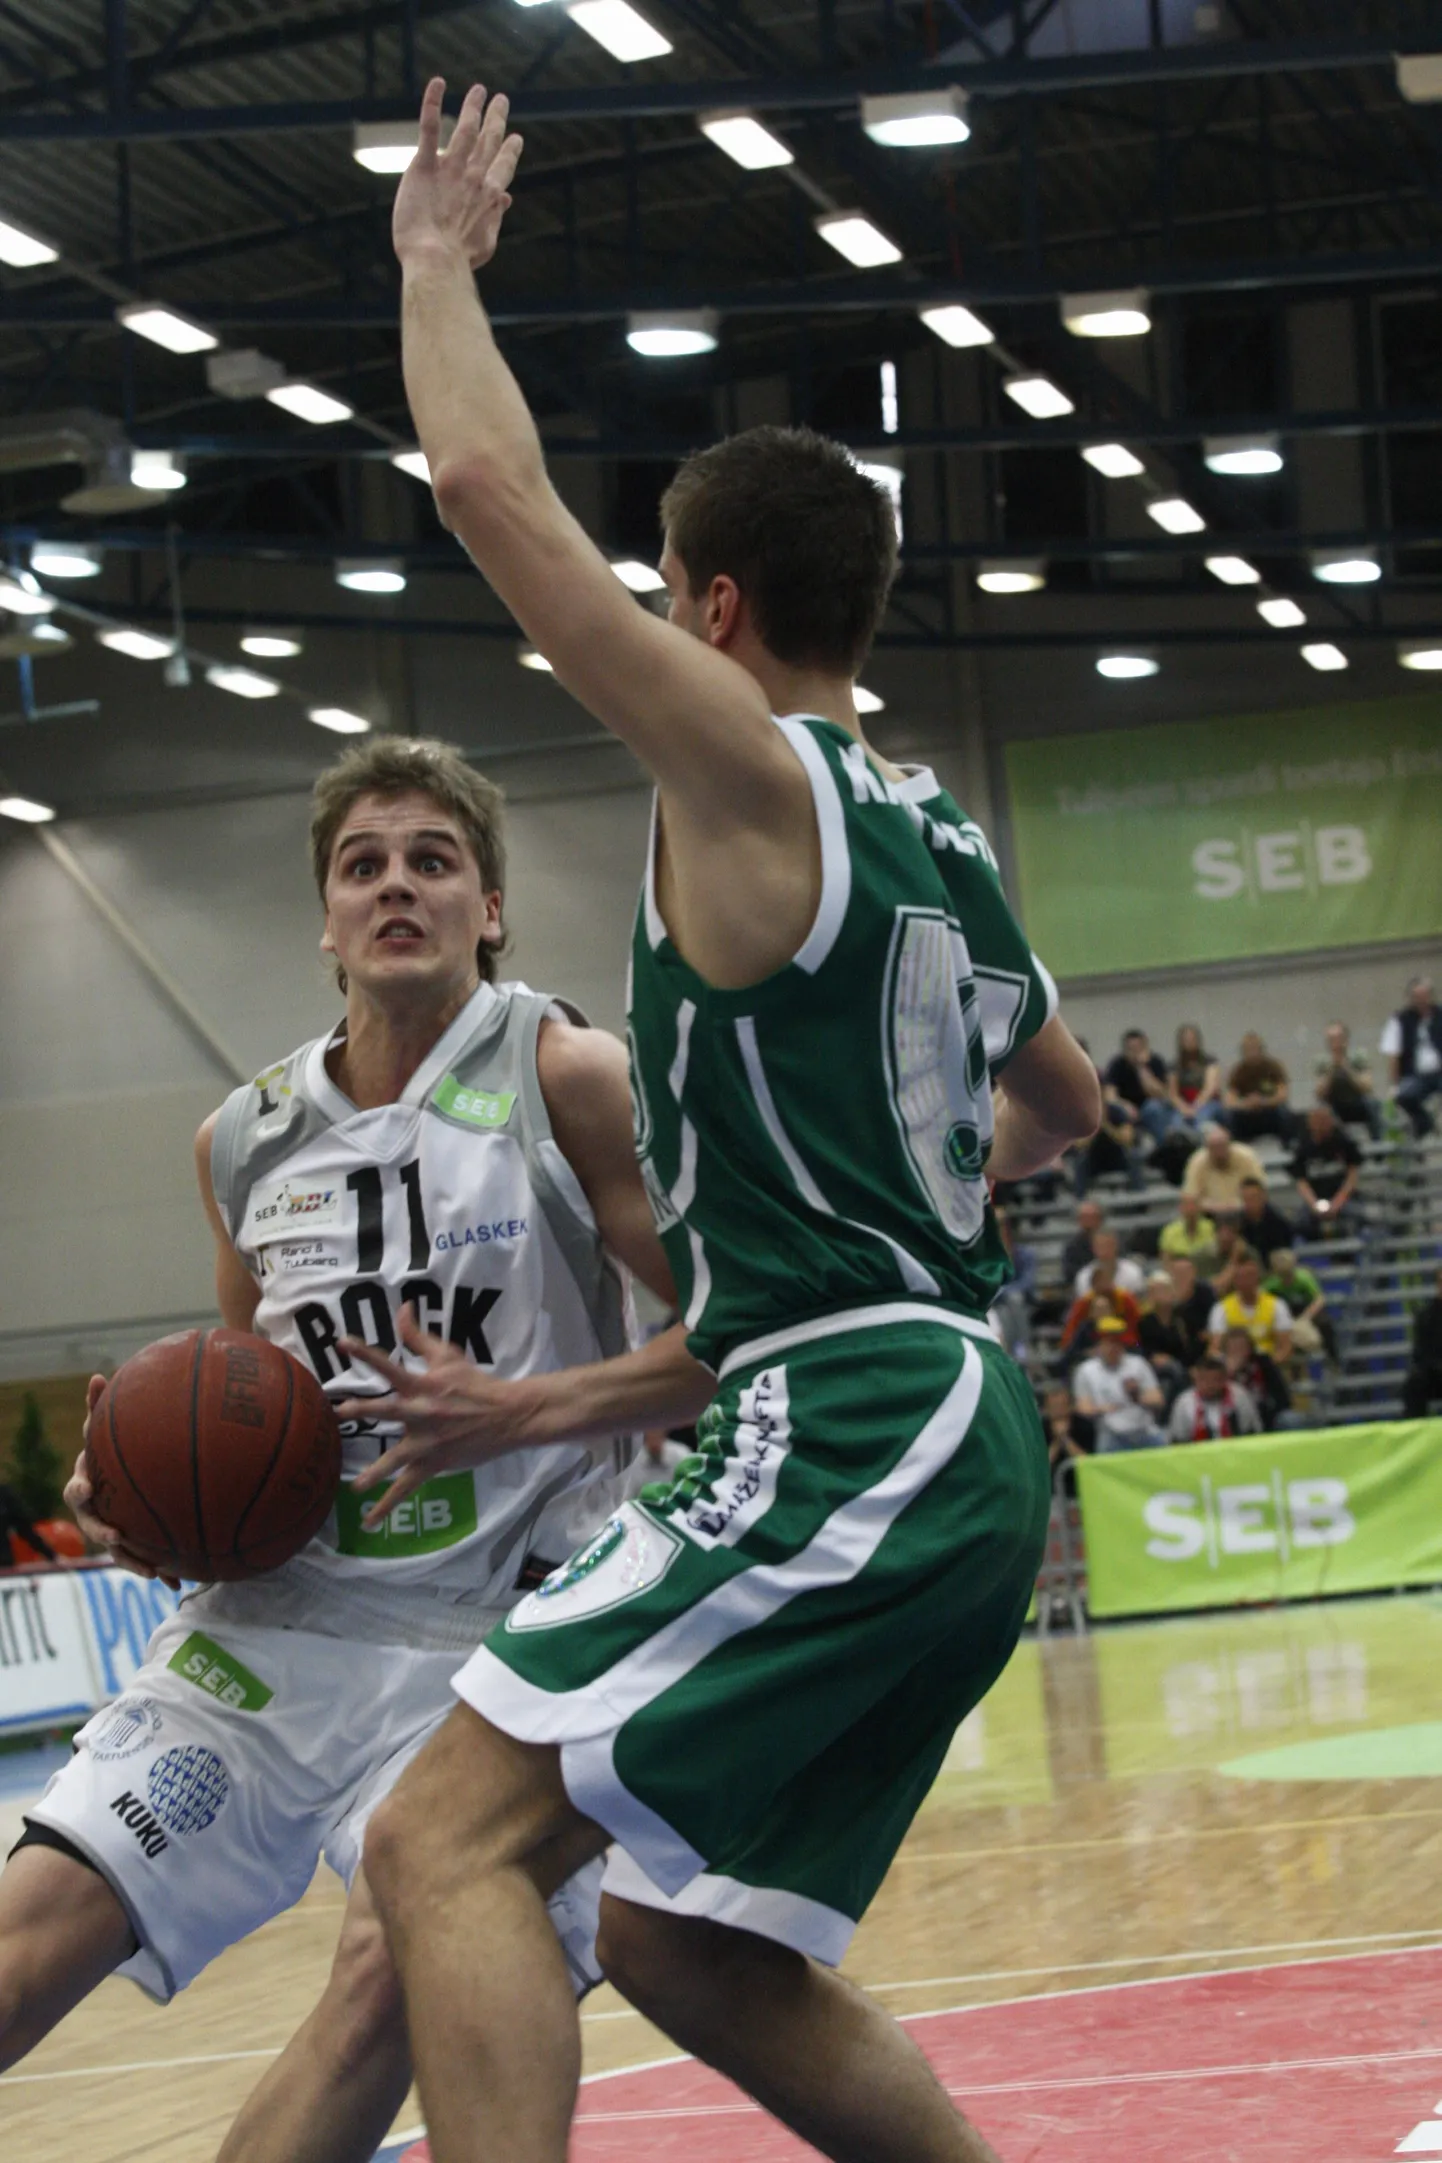 Teises poolfinaalis võitis Kaunase Zalgiris TÜ/Rocki 83:74 (pildil rünnakul Marek Doronin).